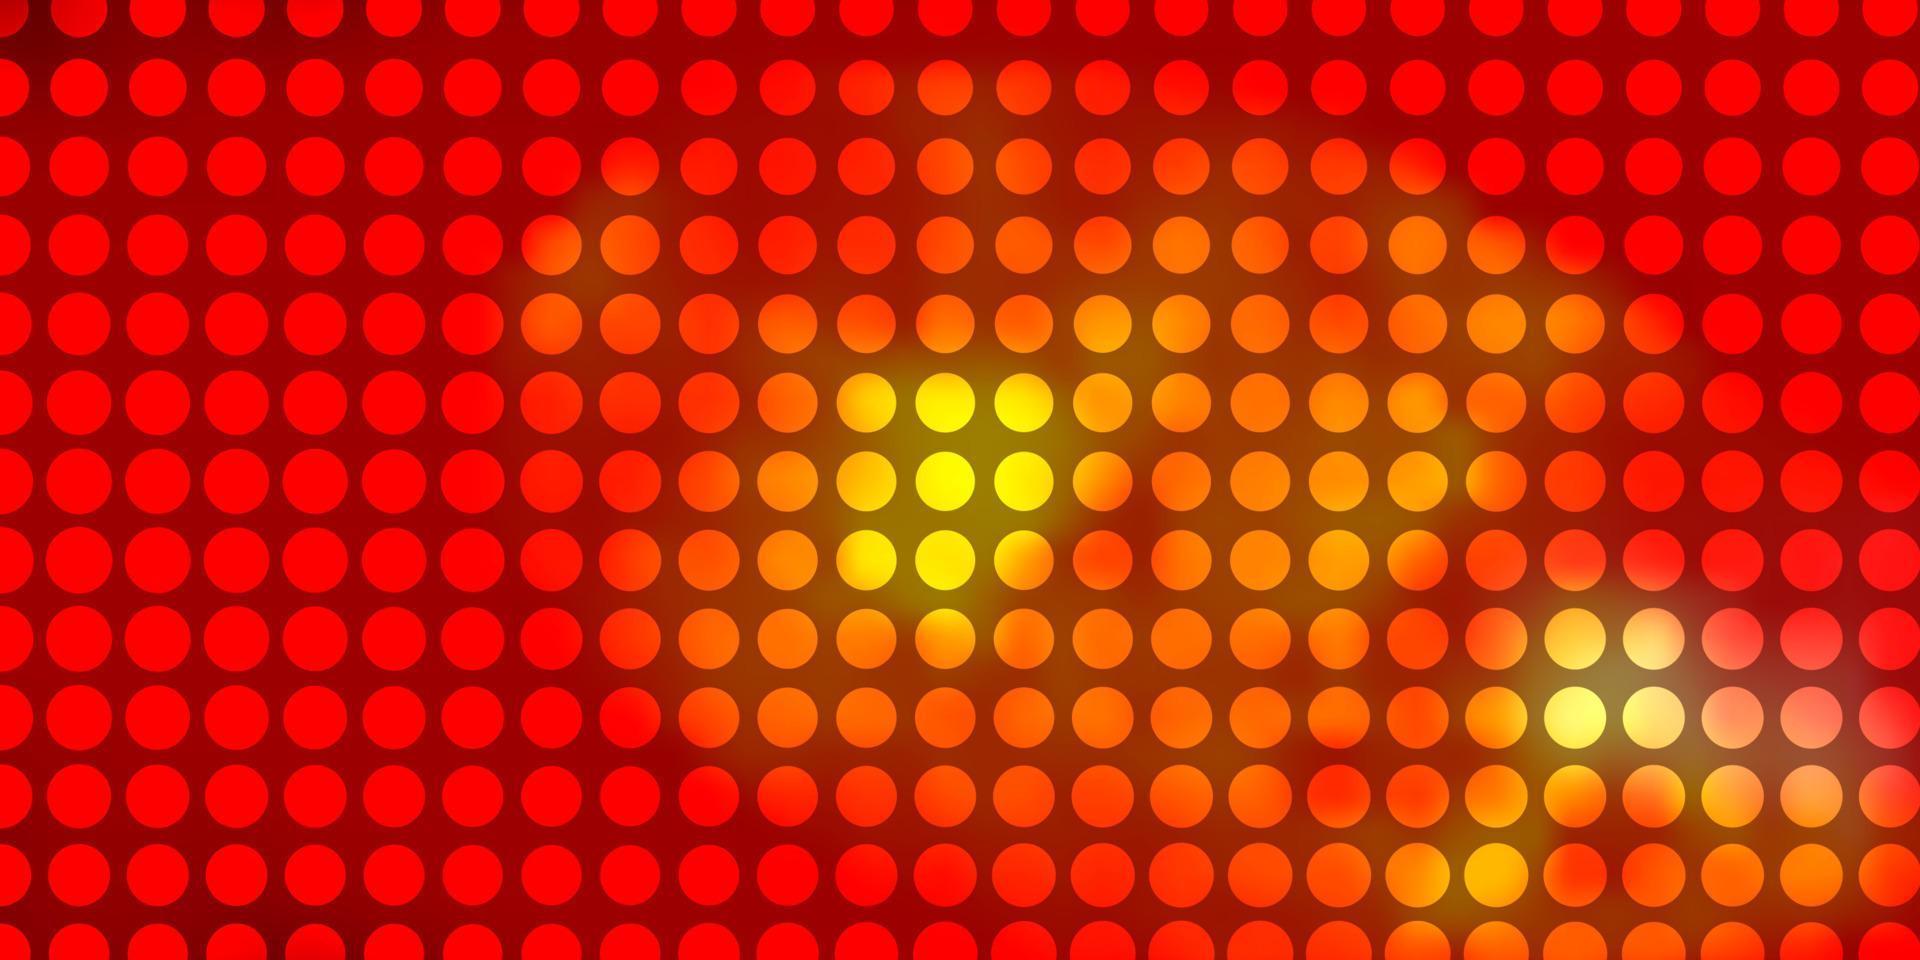 luz vermelha, amarelo padrão de vetor com círculos.